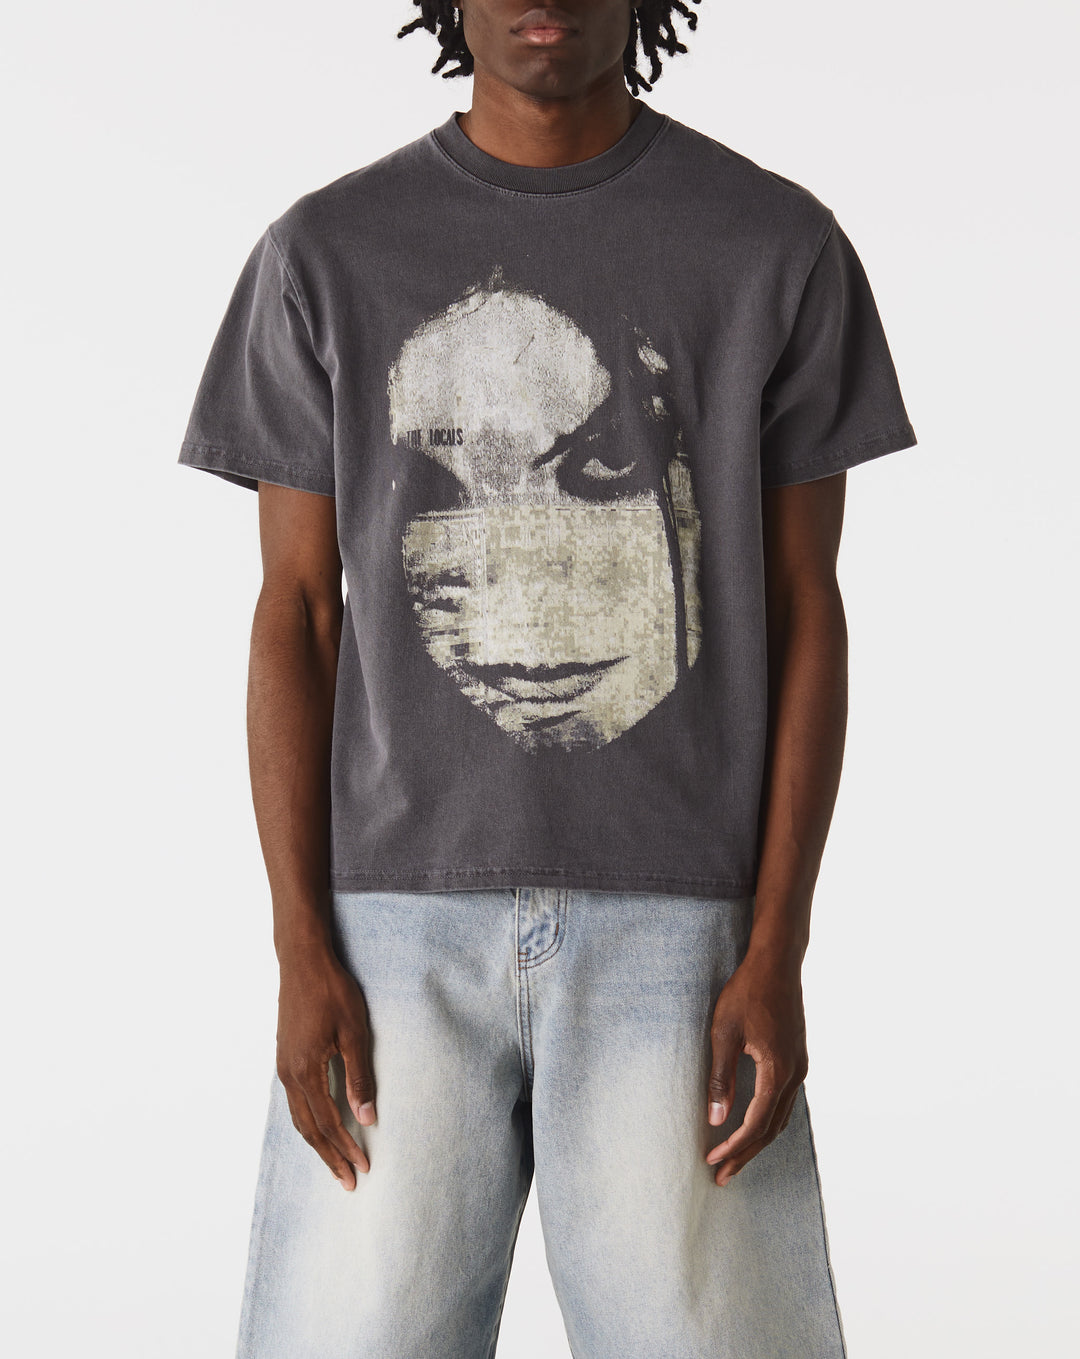 Basketcase Gallery Evanescence T-Shirt buttoned-up  - Cheap Urlfreeze Jordan outlet